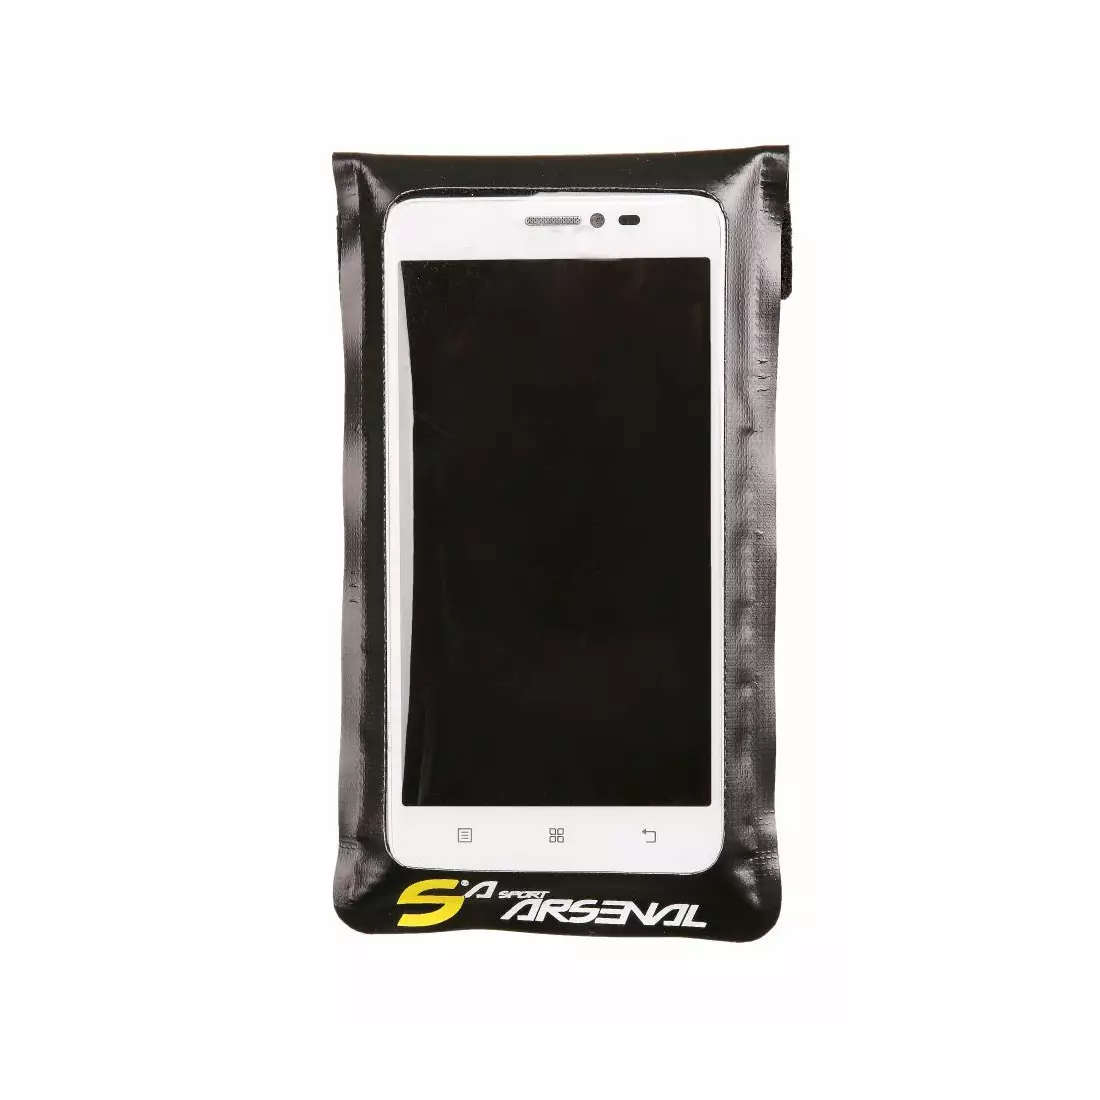 SPORT ARSENAL 530 Fahrradtasche für Smartphone klein 3,5'-4,5'